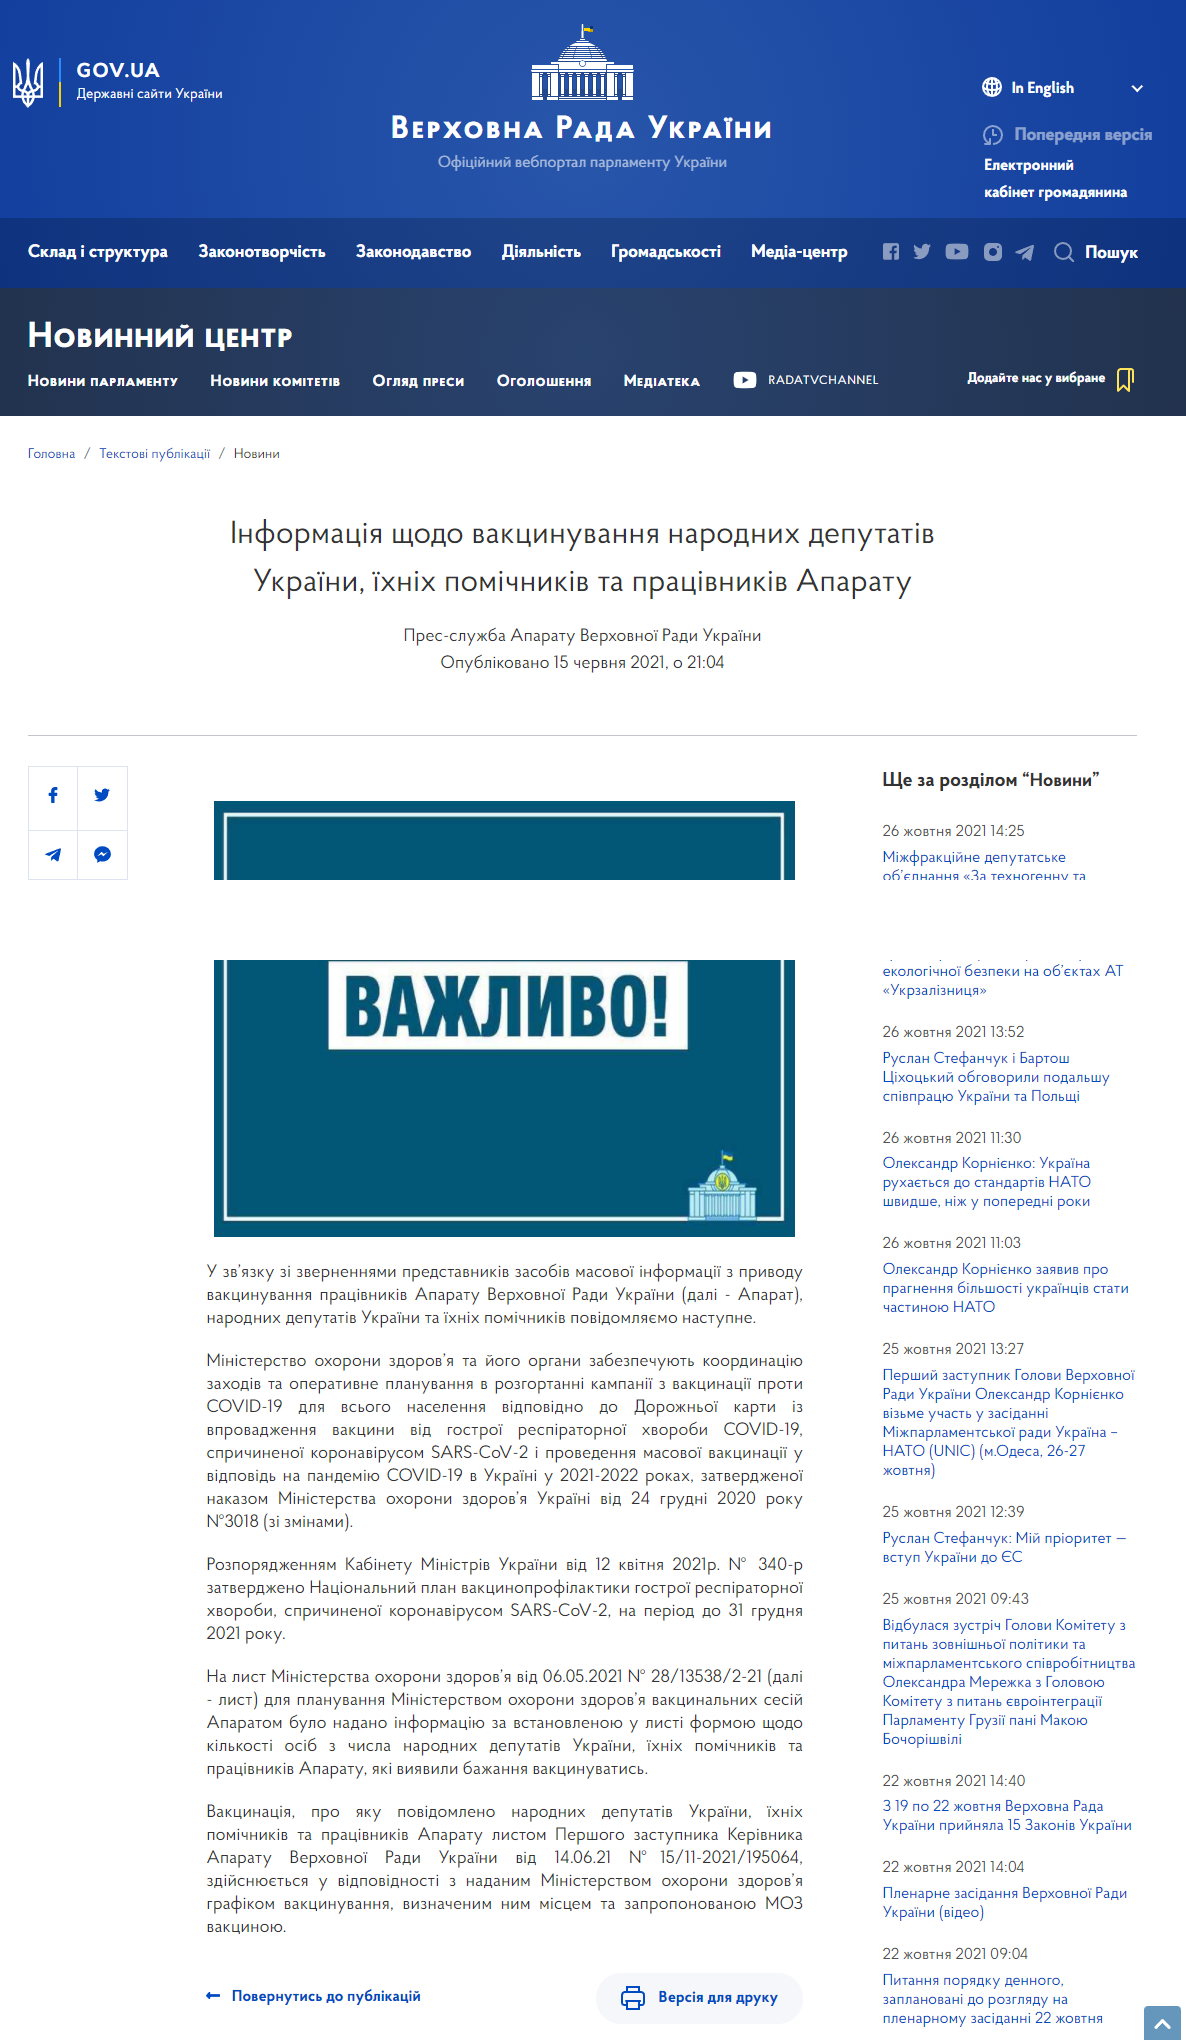 https://www.rada.gov.ua/news/Novyny/210319.html